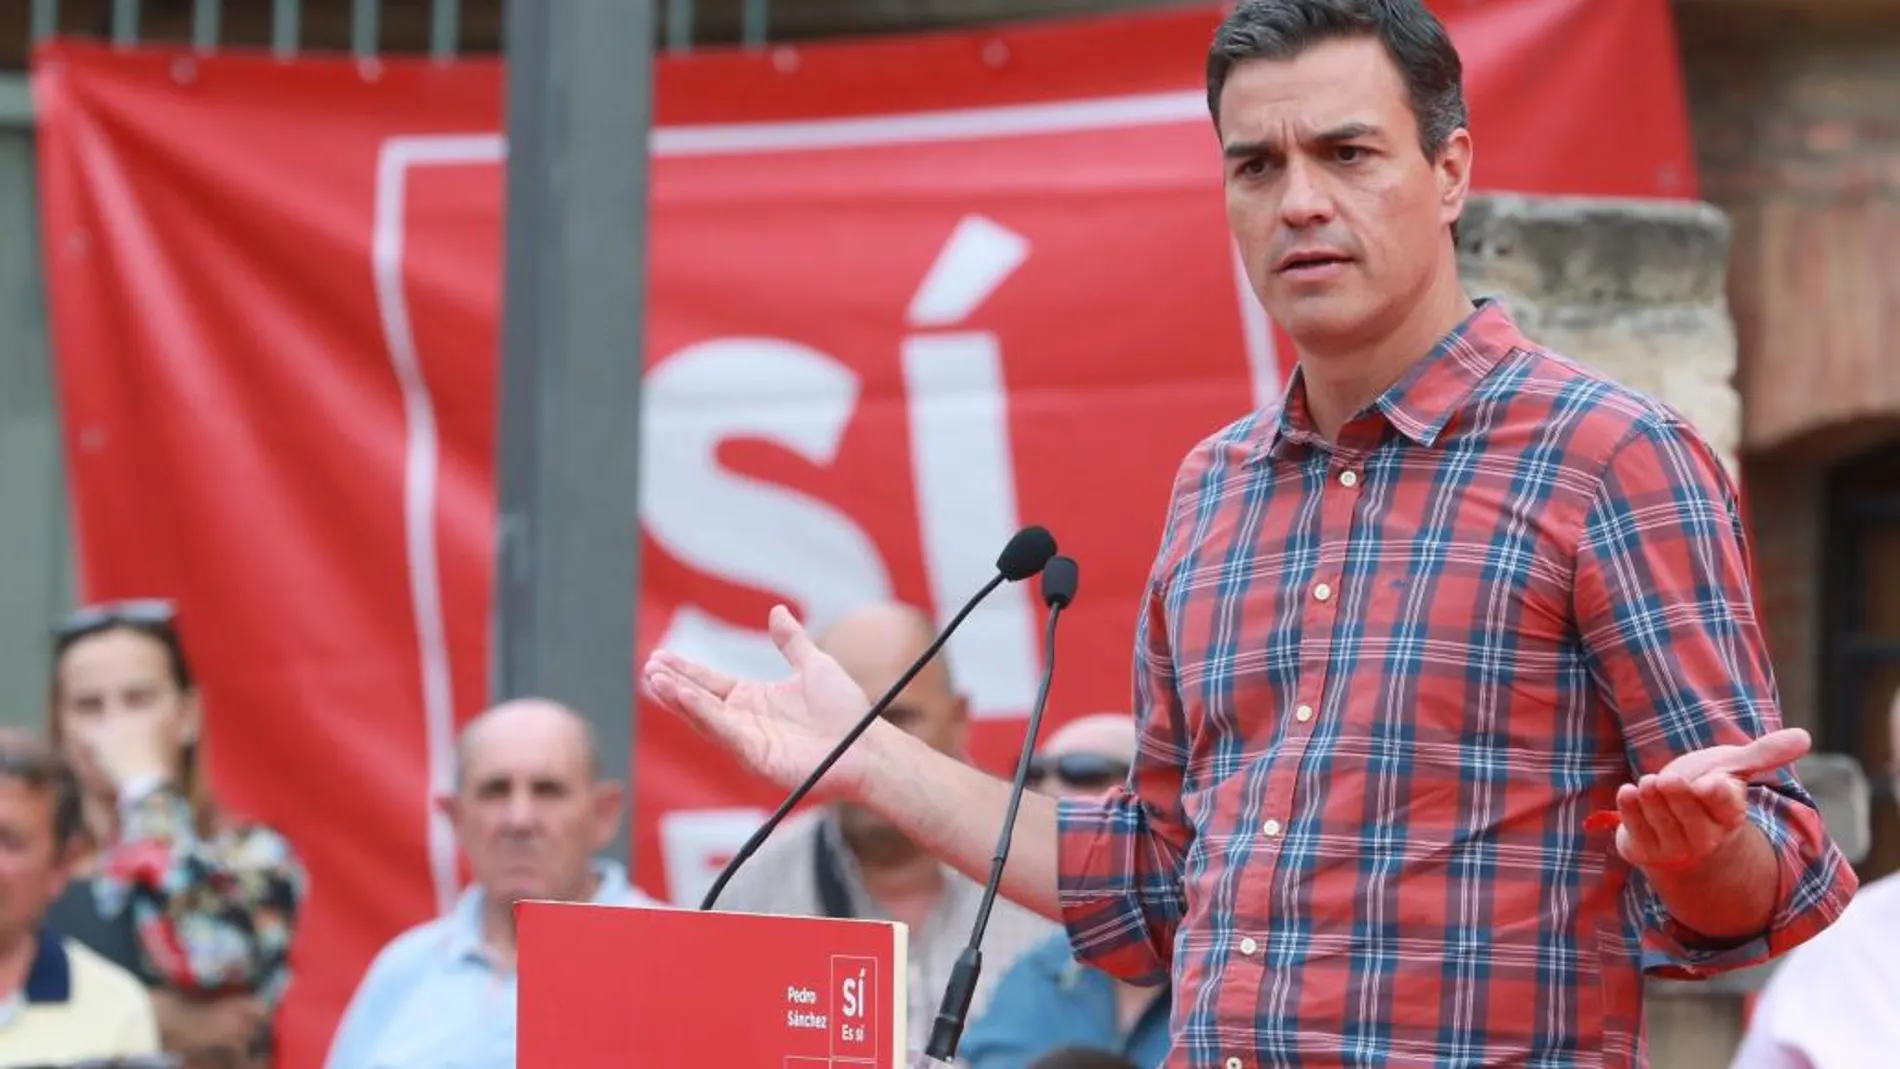 El candidato a la Secretaría general del PSOE, Pedro Sánchez, durante su intervención en un acto de campaña con militantes del partido en Zaragoza